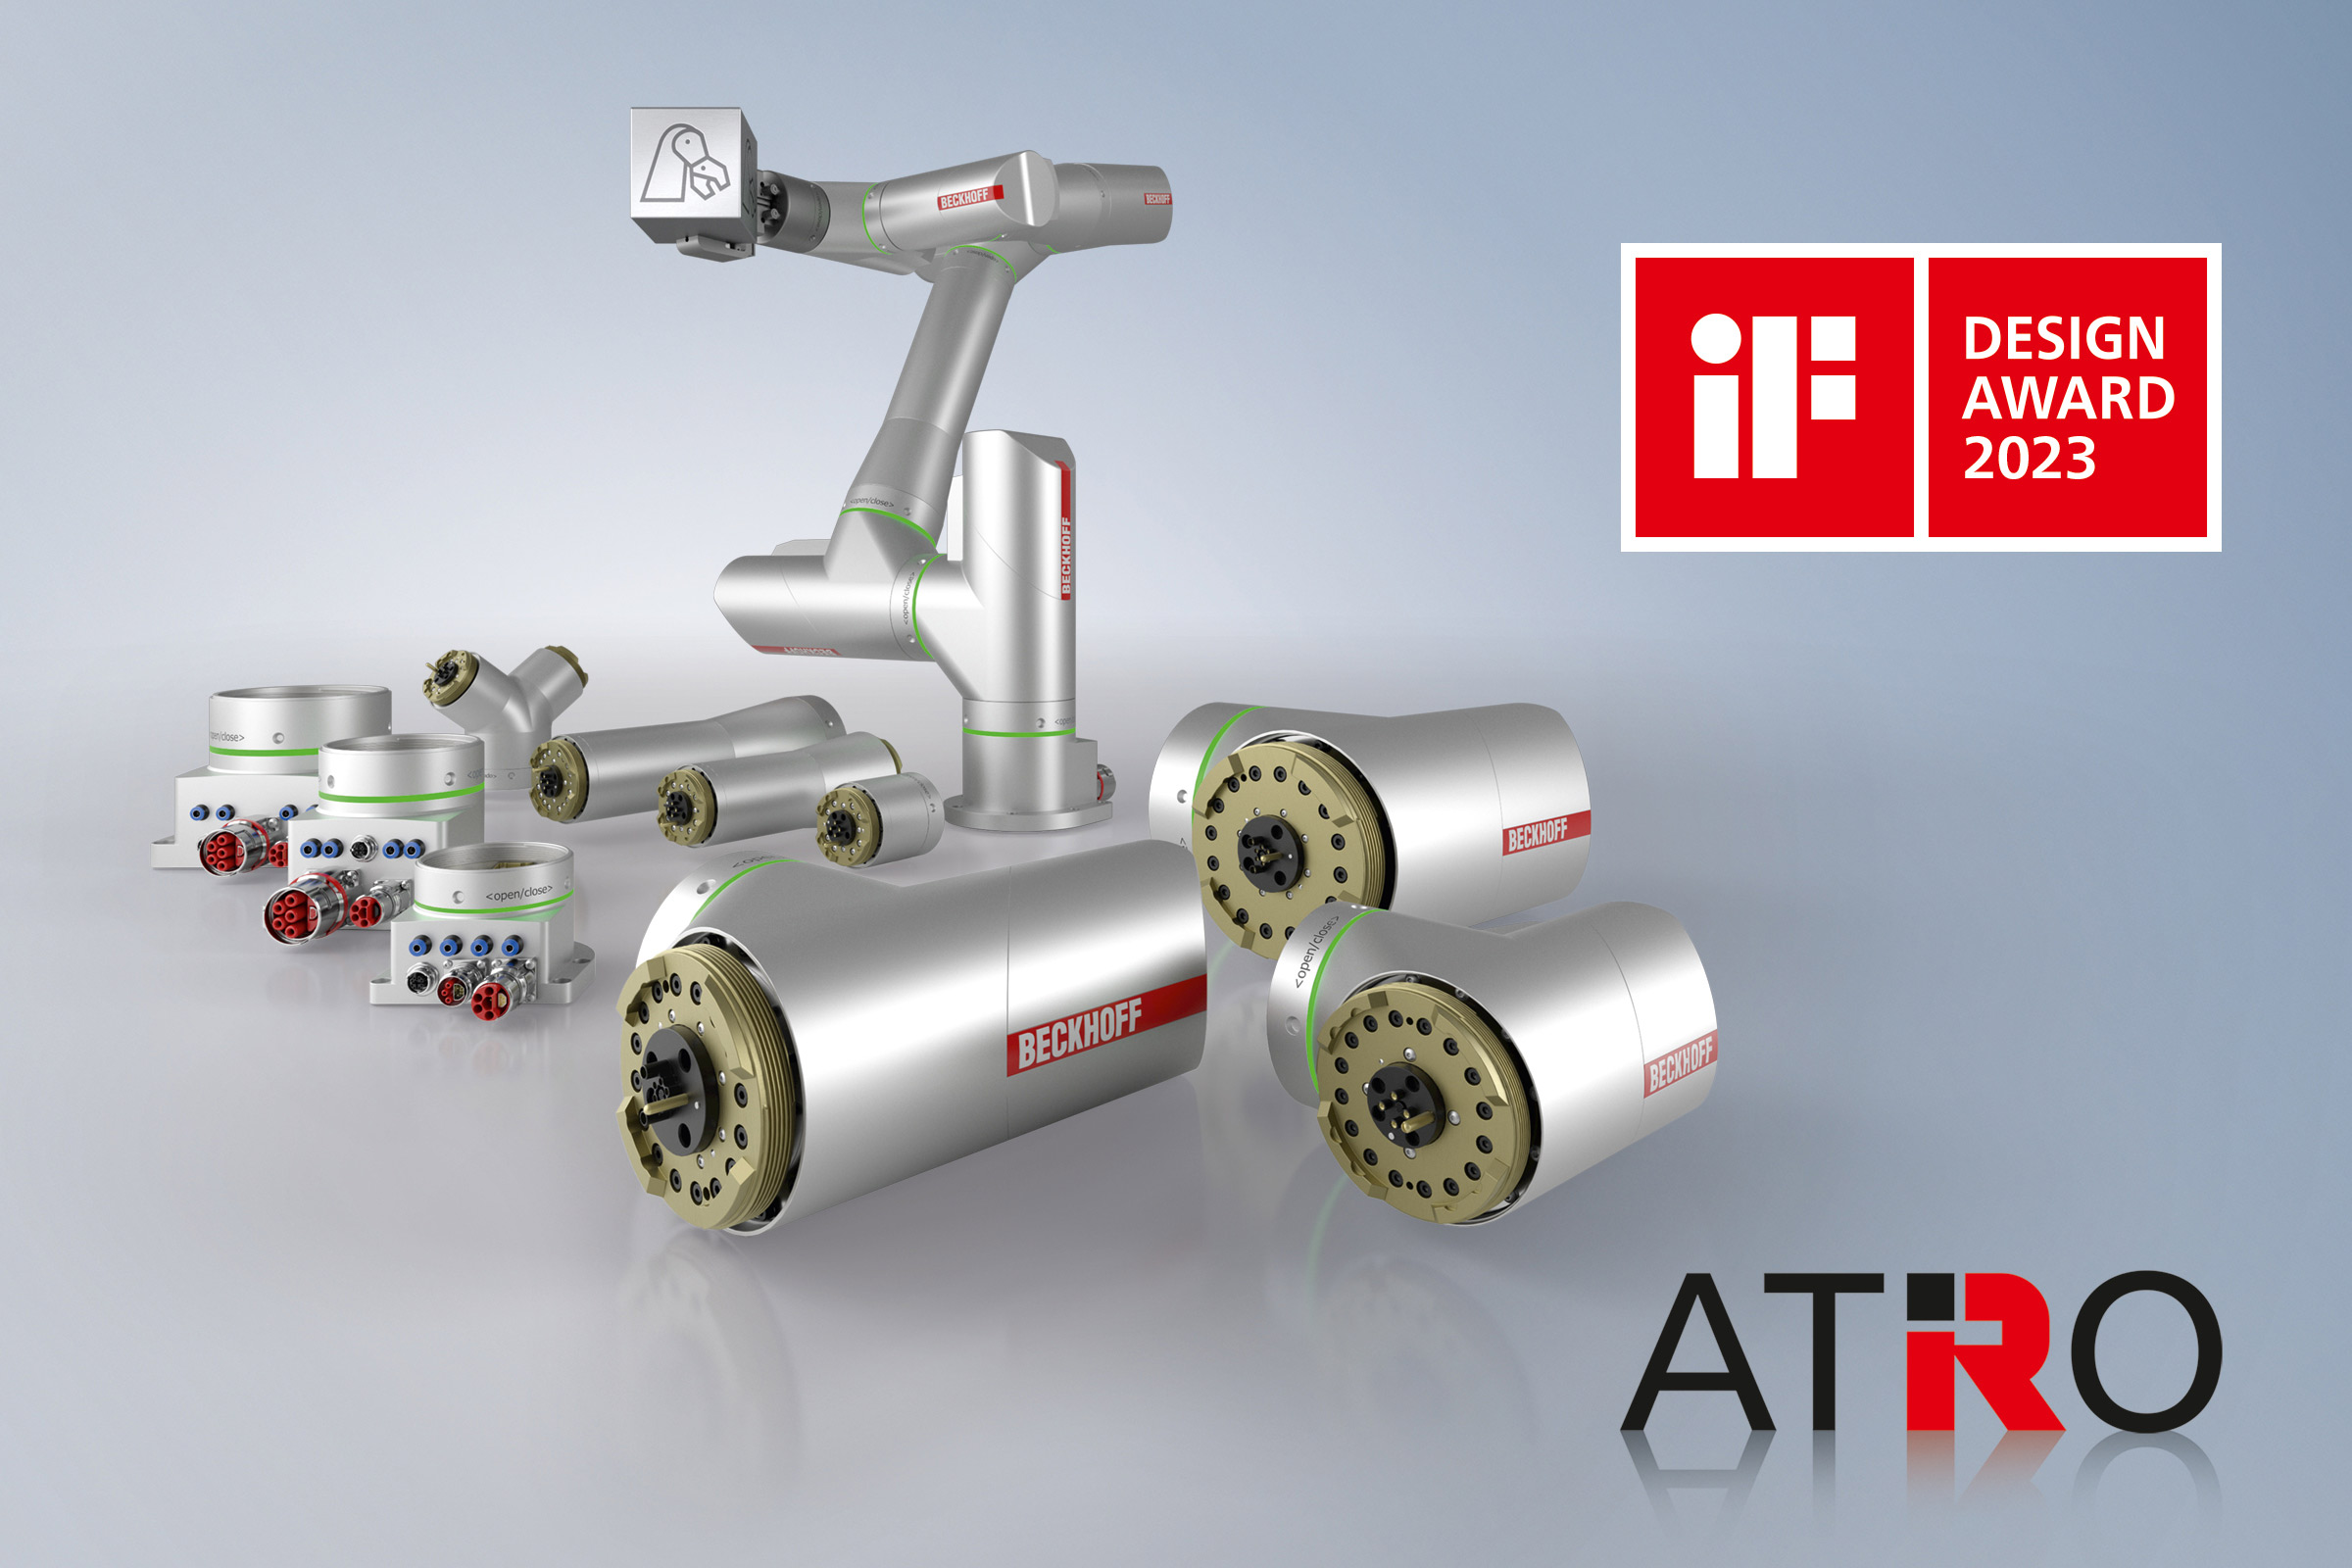 倍福 ATRO 系统：完整的设备，全自动化。 